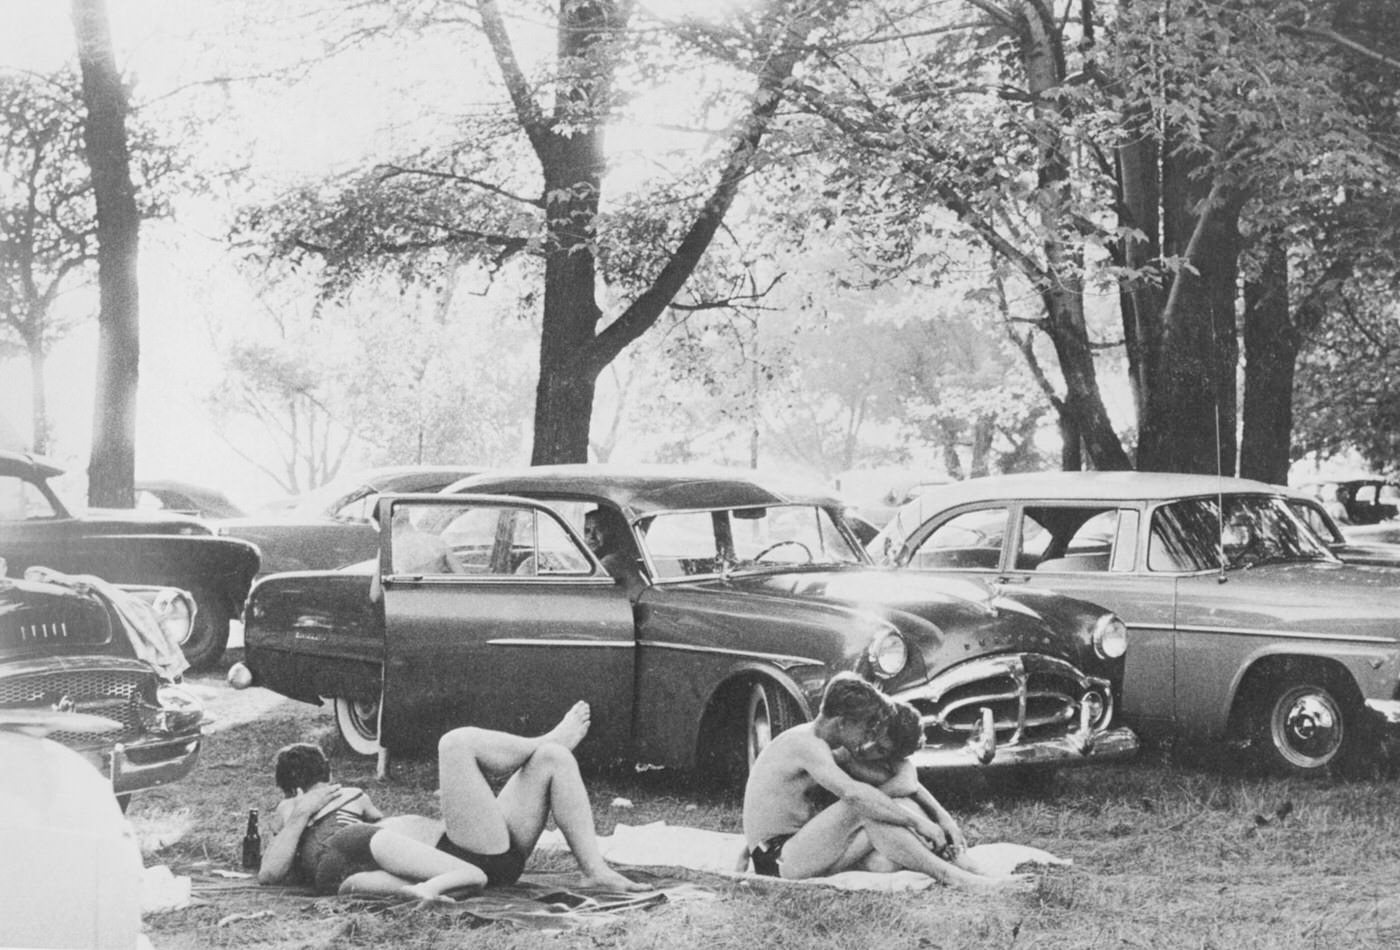 Public park – Ann Arbor, Michigan’ 1955